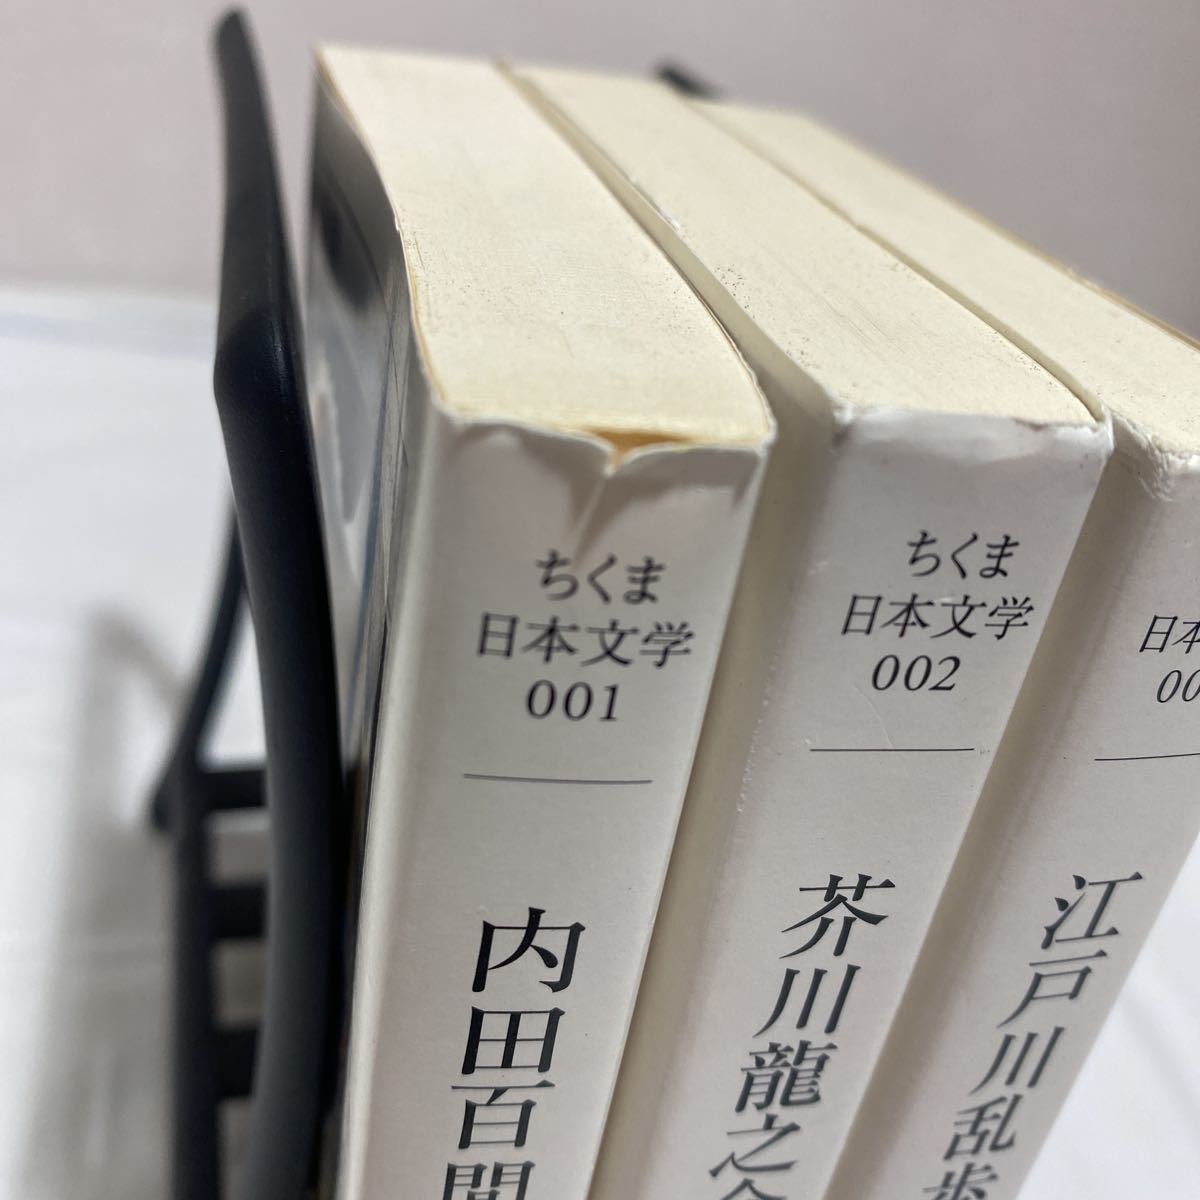  Chikuma day text .001*002*007 total 3 pcs. secondhand book inside rice field 100 .* Akutagawa Ryunosuke * Edogawa Ranpo library .. bookstore 